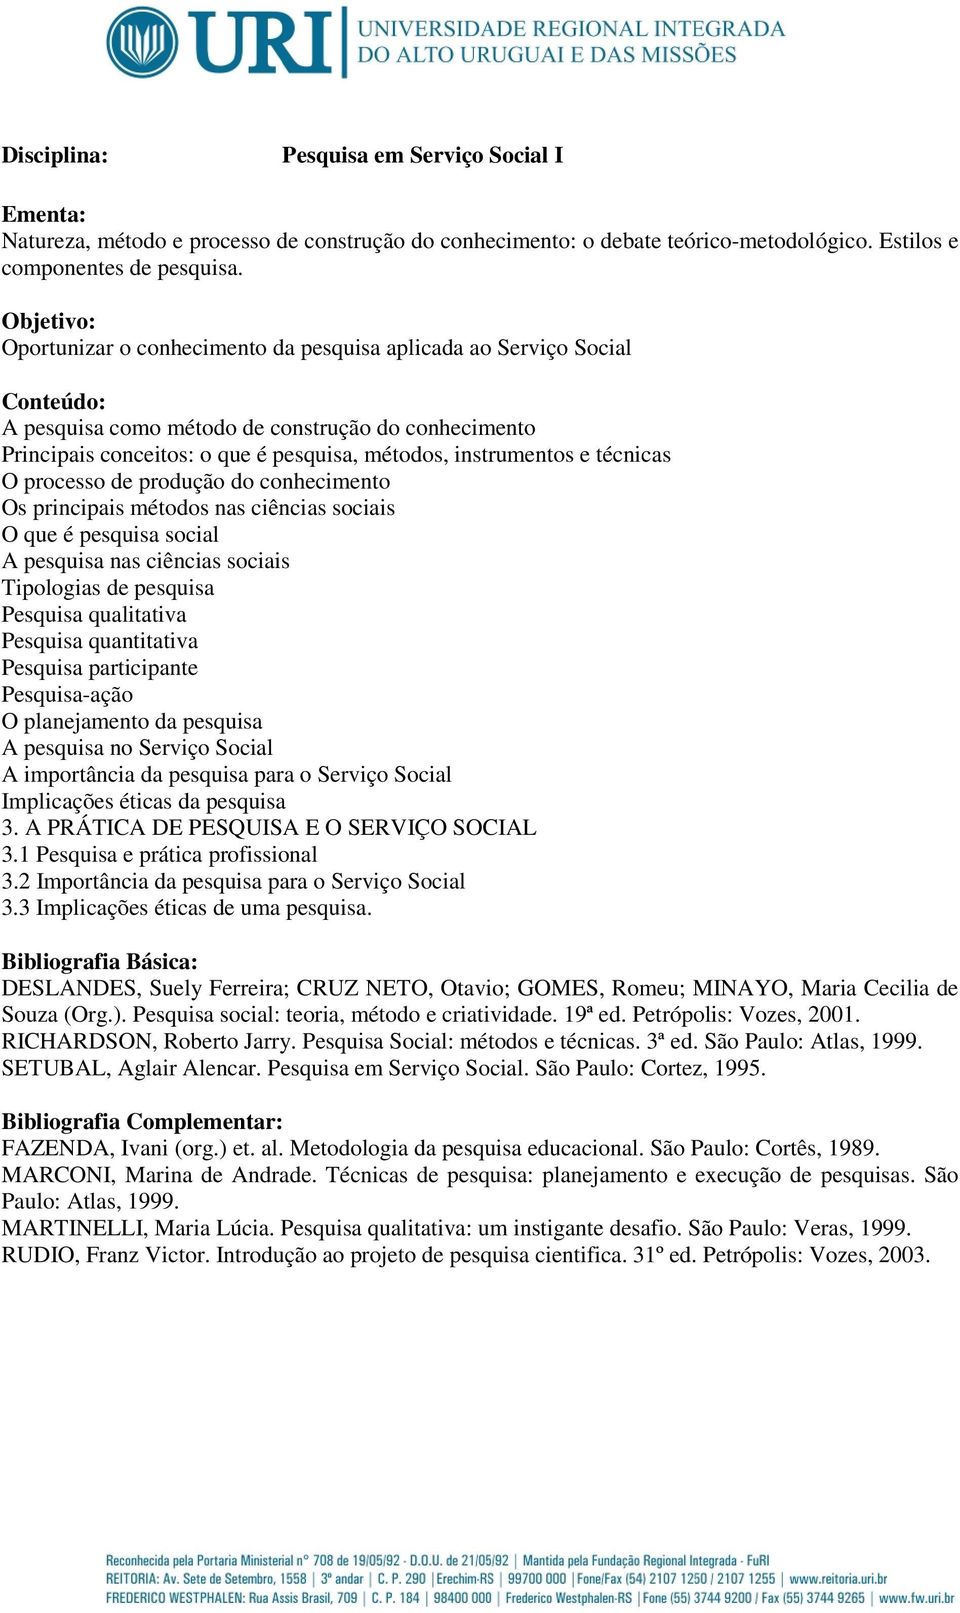 Metodologia da pesquisa educacional ivani fazenda pdf